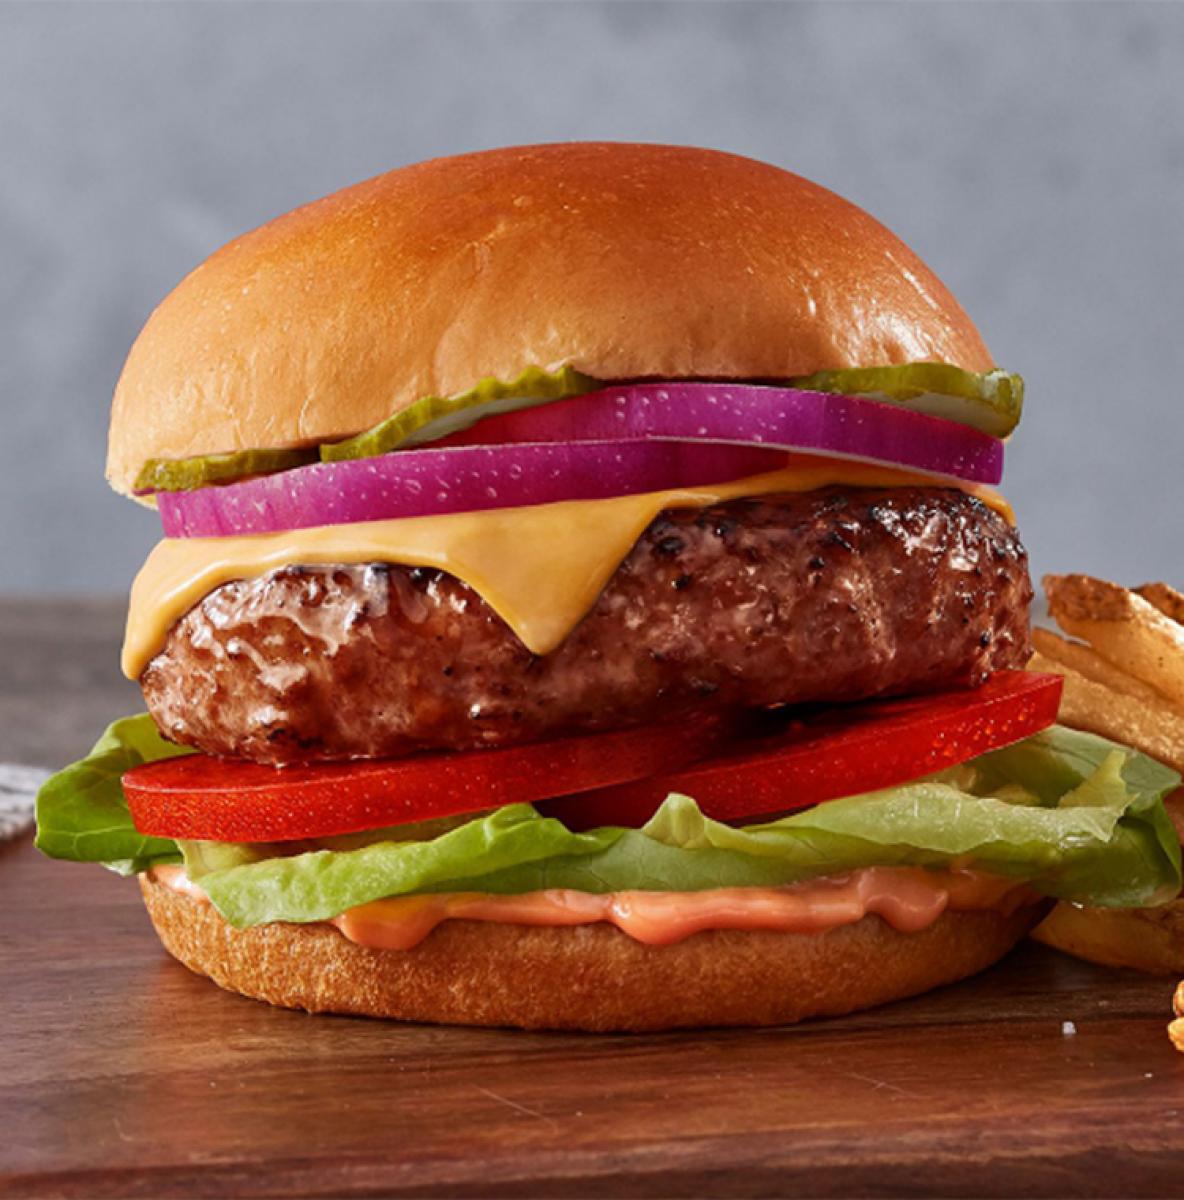 La hamburguesa de Beyond Meat, el fabricante que hará los medallones para McDonald's.